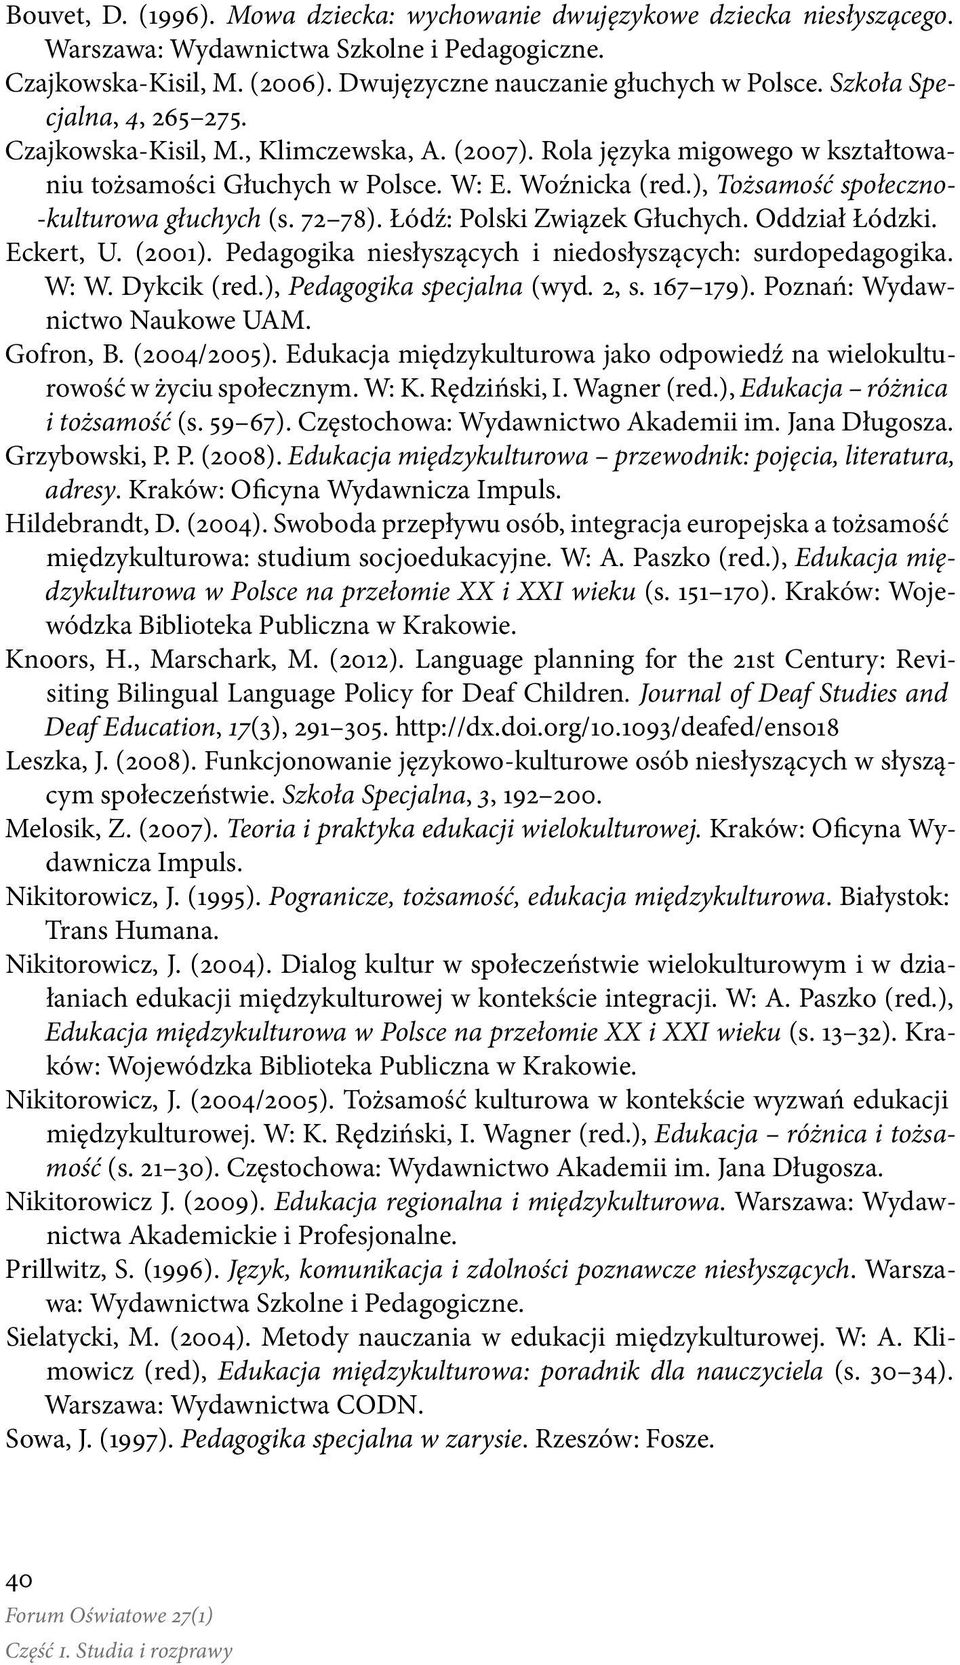 ), Tożsamość społeczno- -kulturowa głuchych (s. 72 78). Łódź: Polski Związek Głuchych. Oddział Łódzki. Eckert, U. (2001). Pedagogika niesłyszących i niedosłyszących: surdopedagogika. W: W.